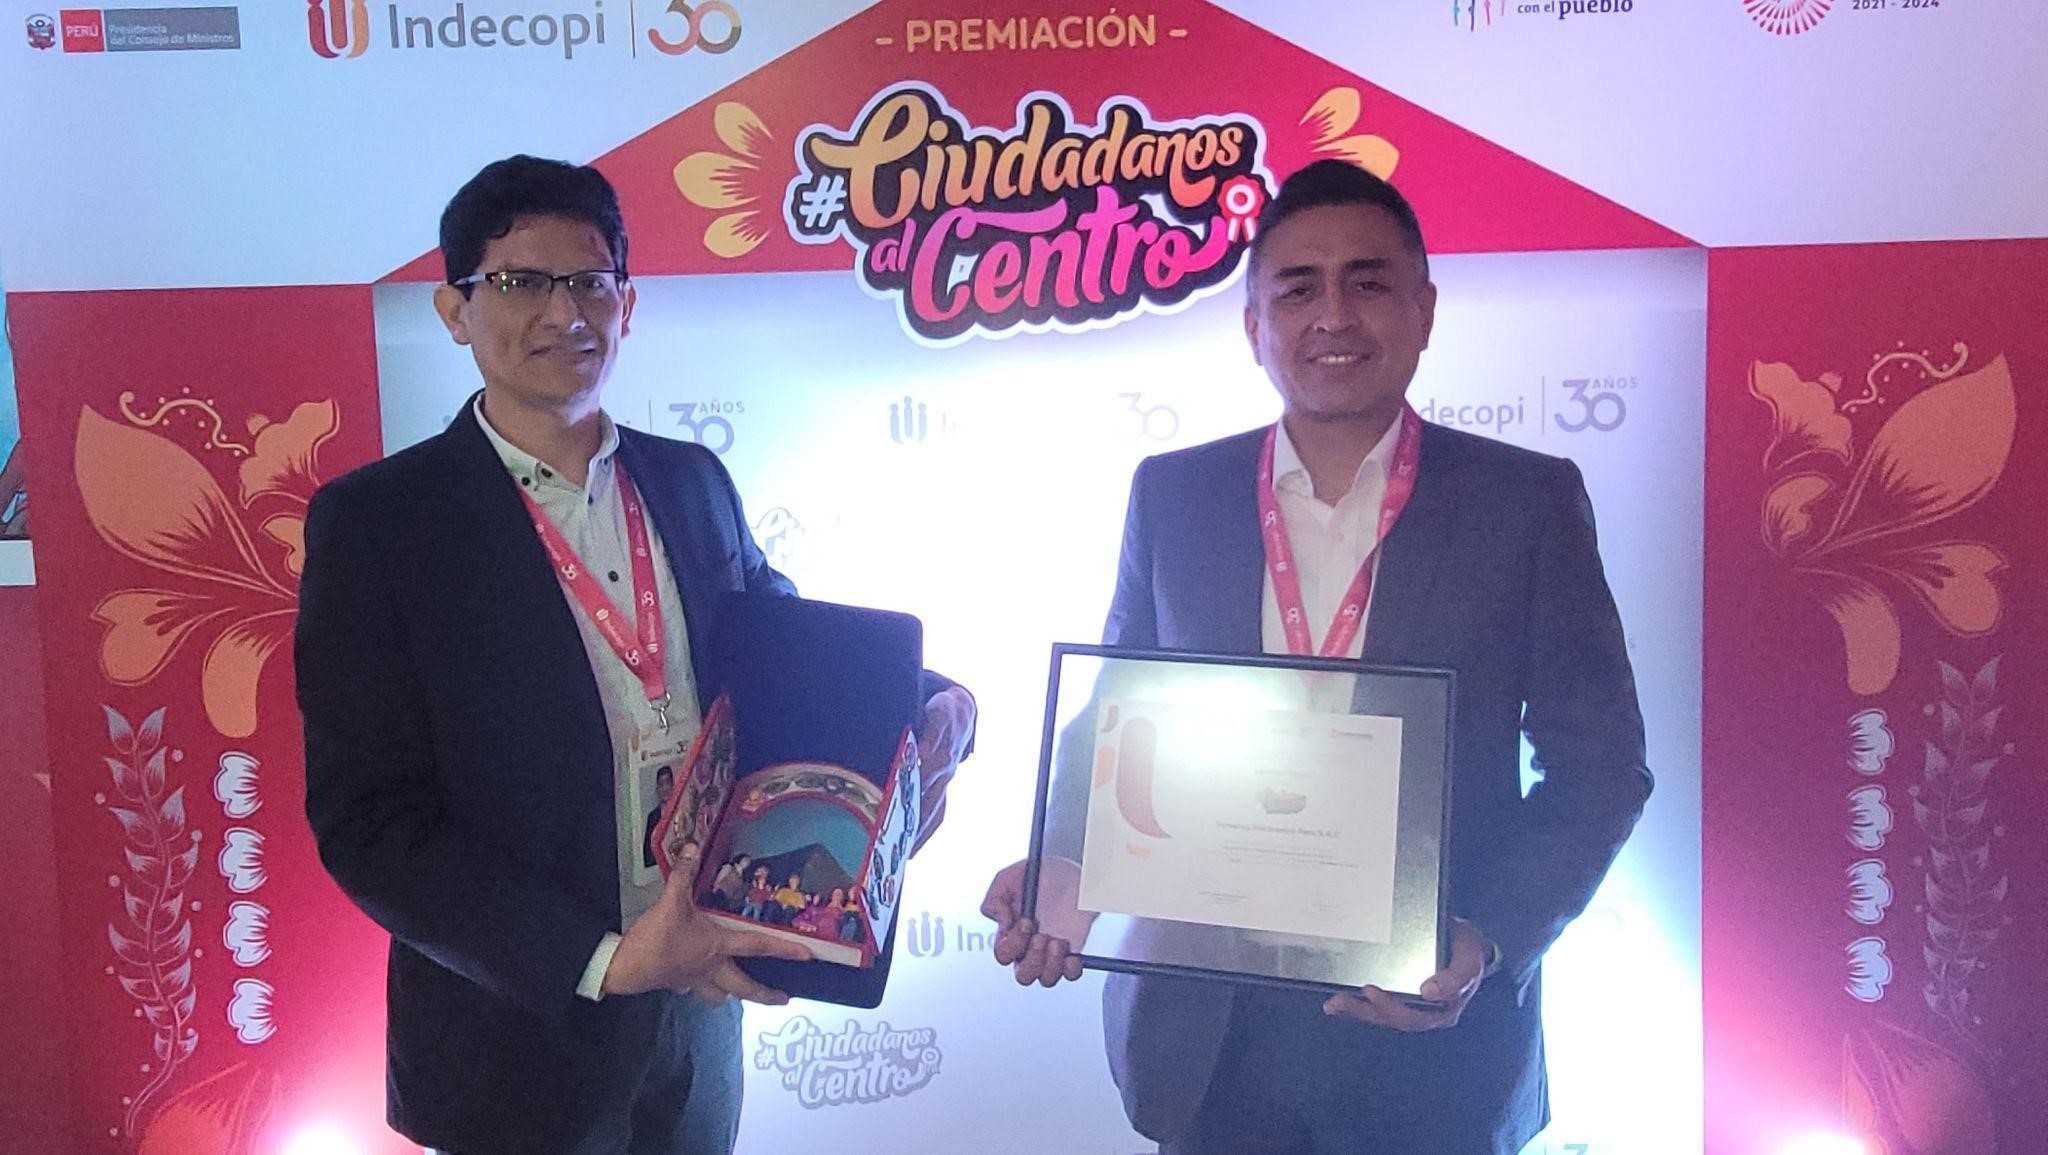 Foto de Samsung Perú obtiene el primer lugar en el concurso “Ciudadanos al Centro 2022” de Indecopi gracias a sus servicios de atención inclusivos